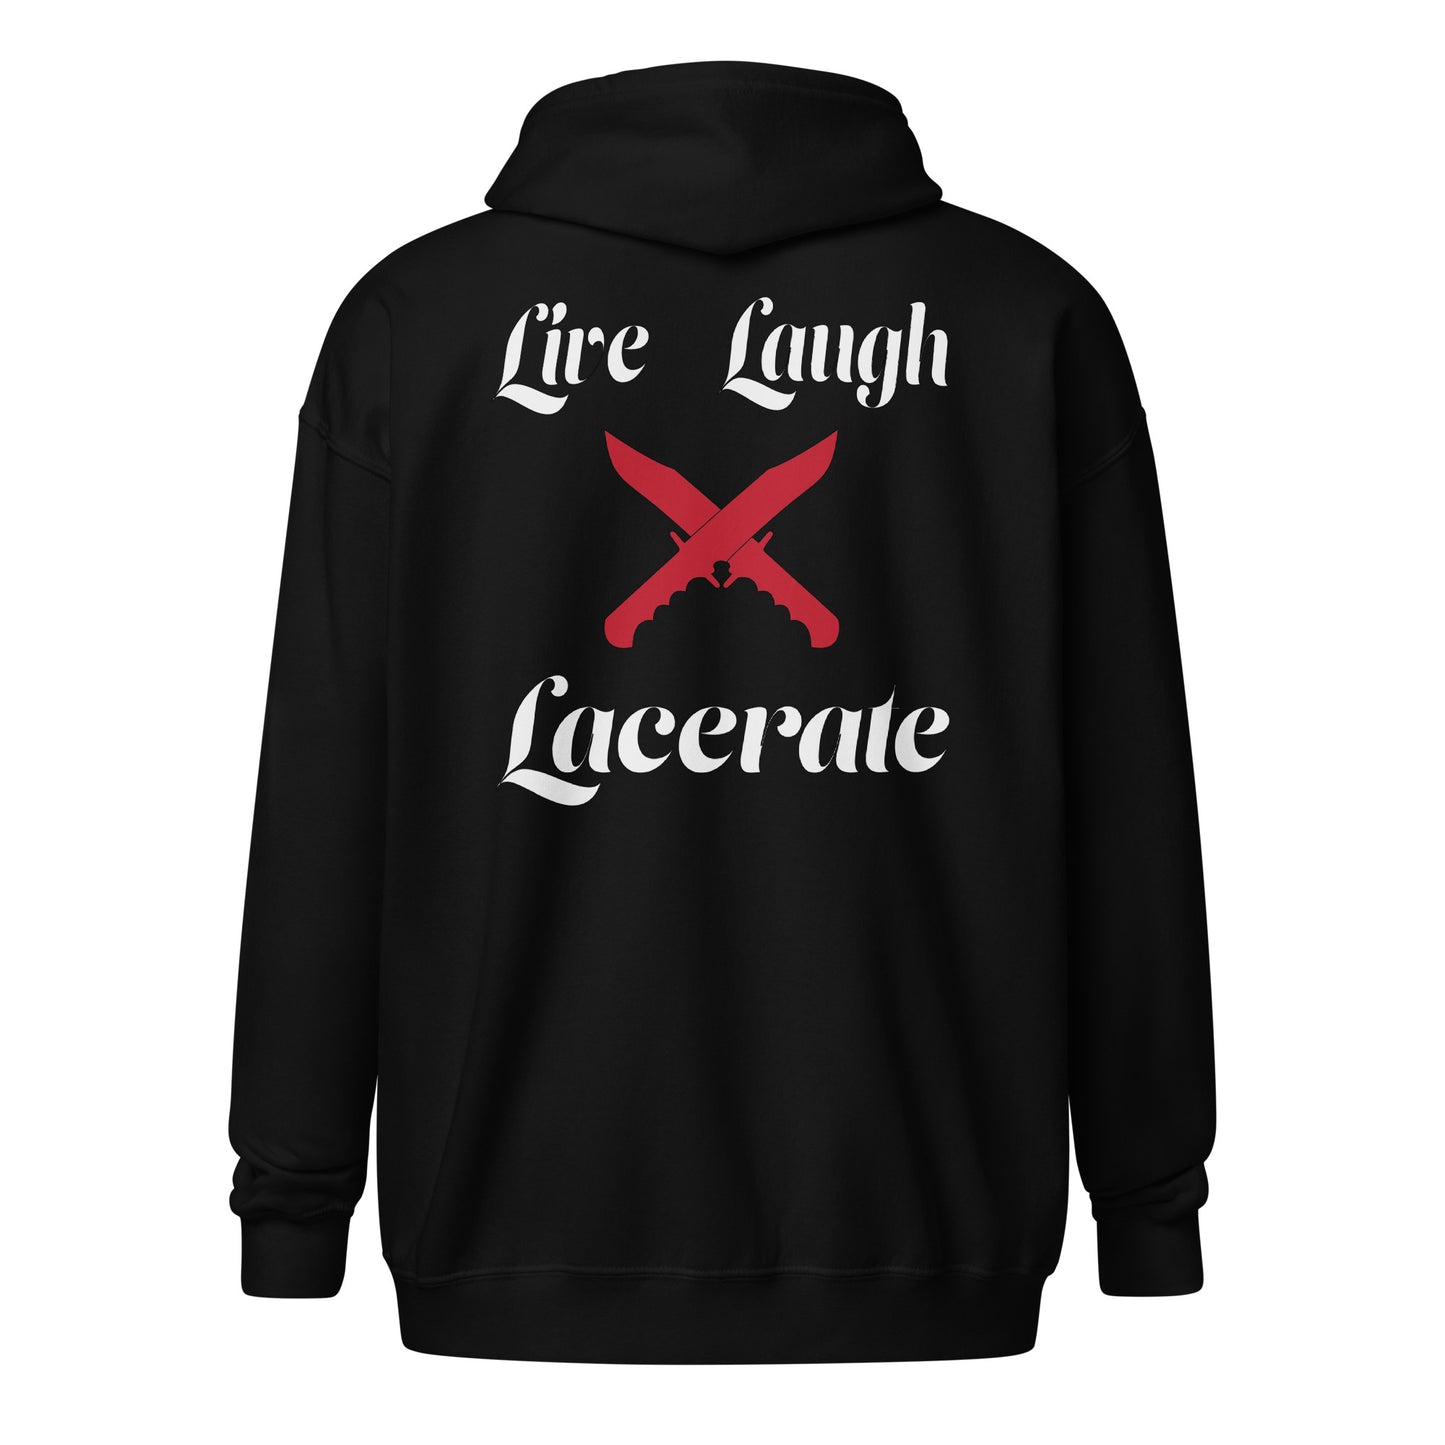 Live Love Lacerate zip hoodie